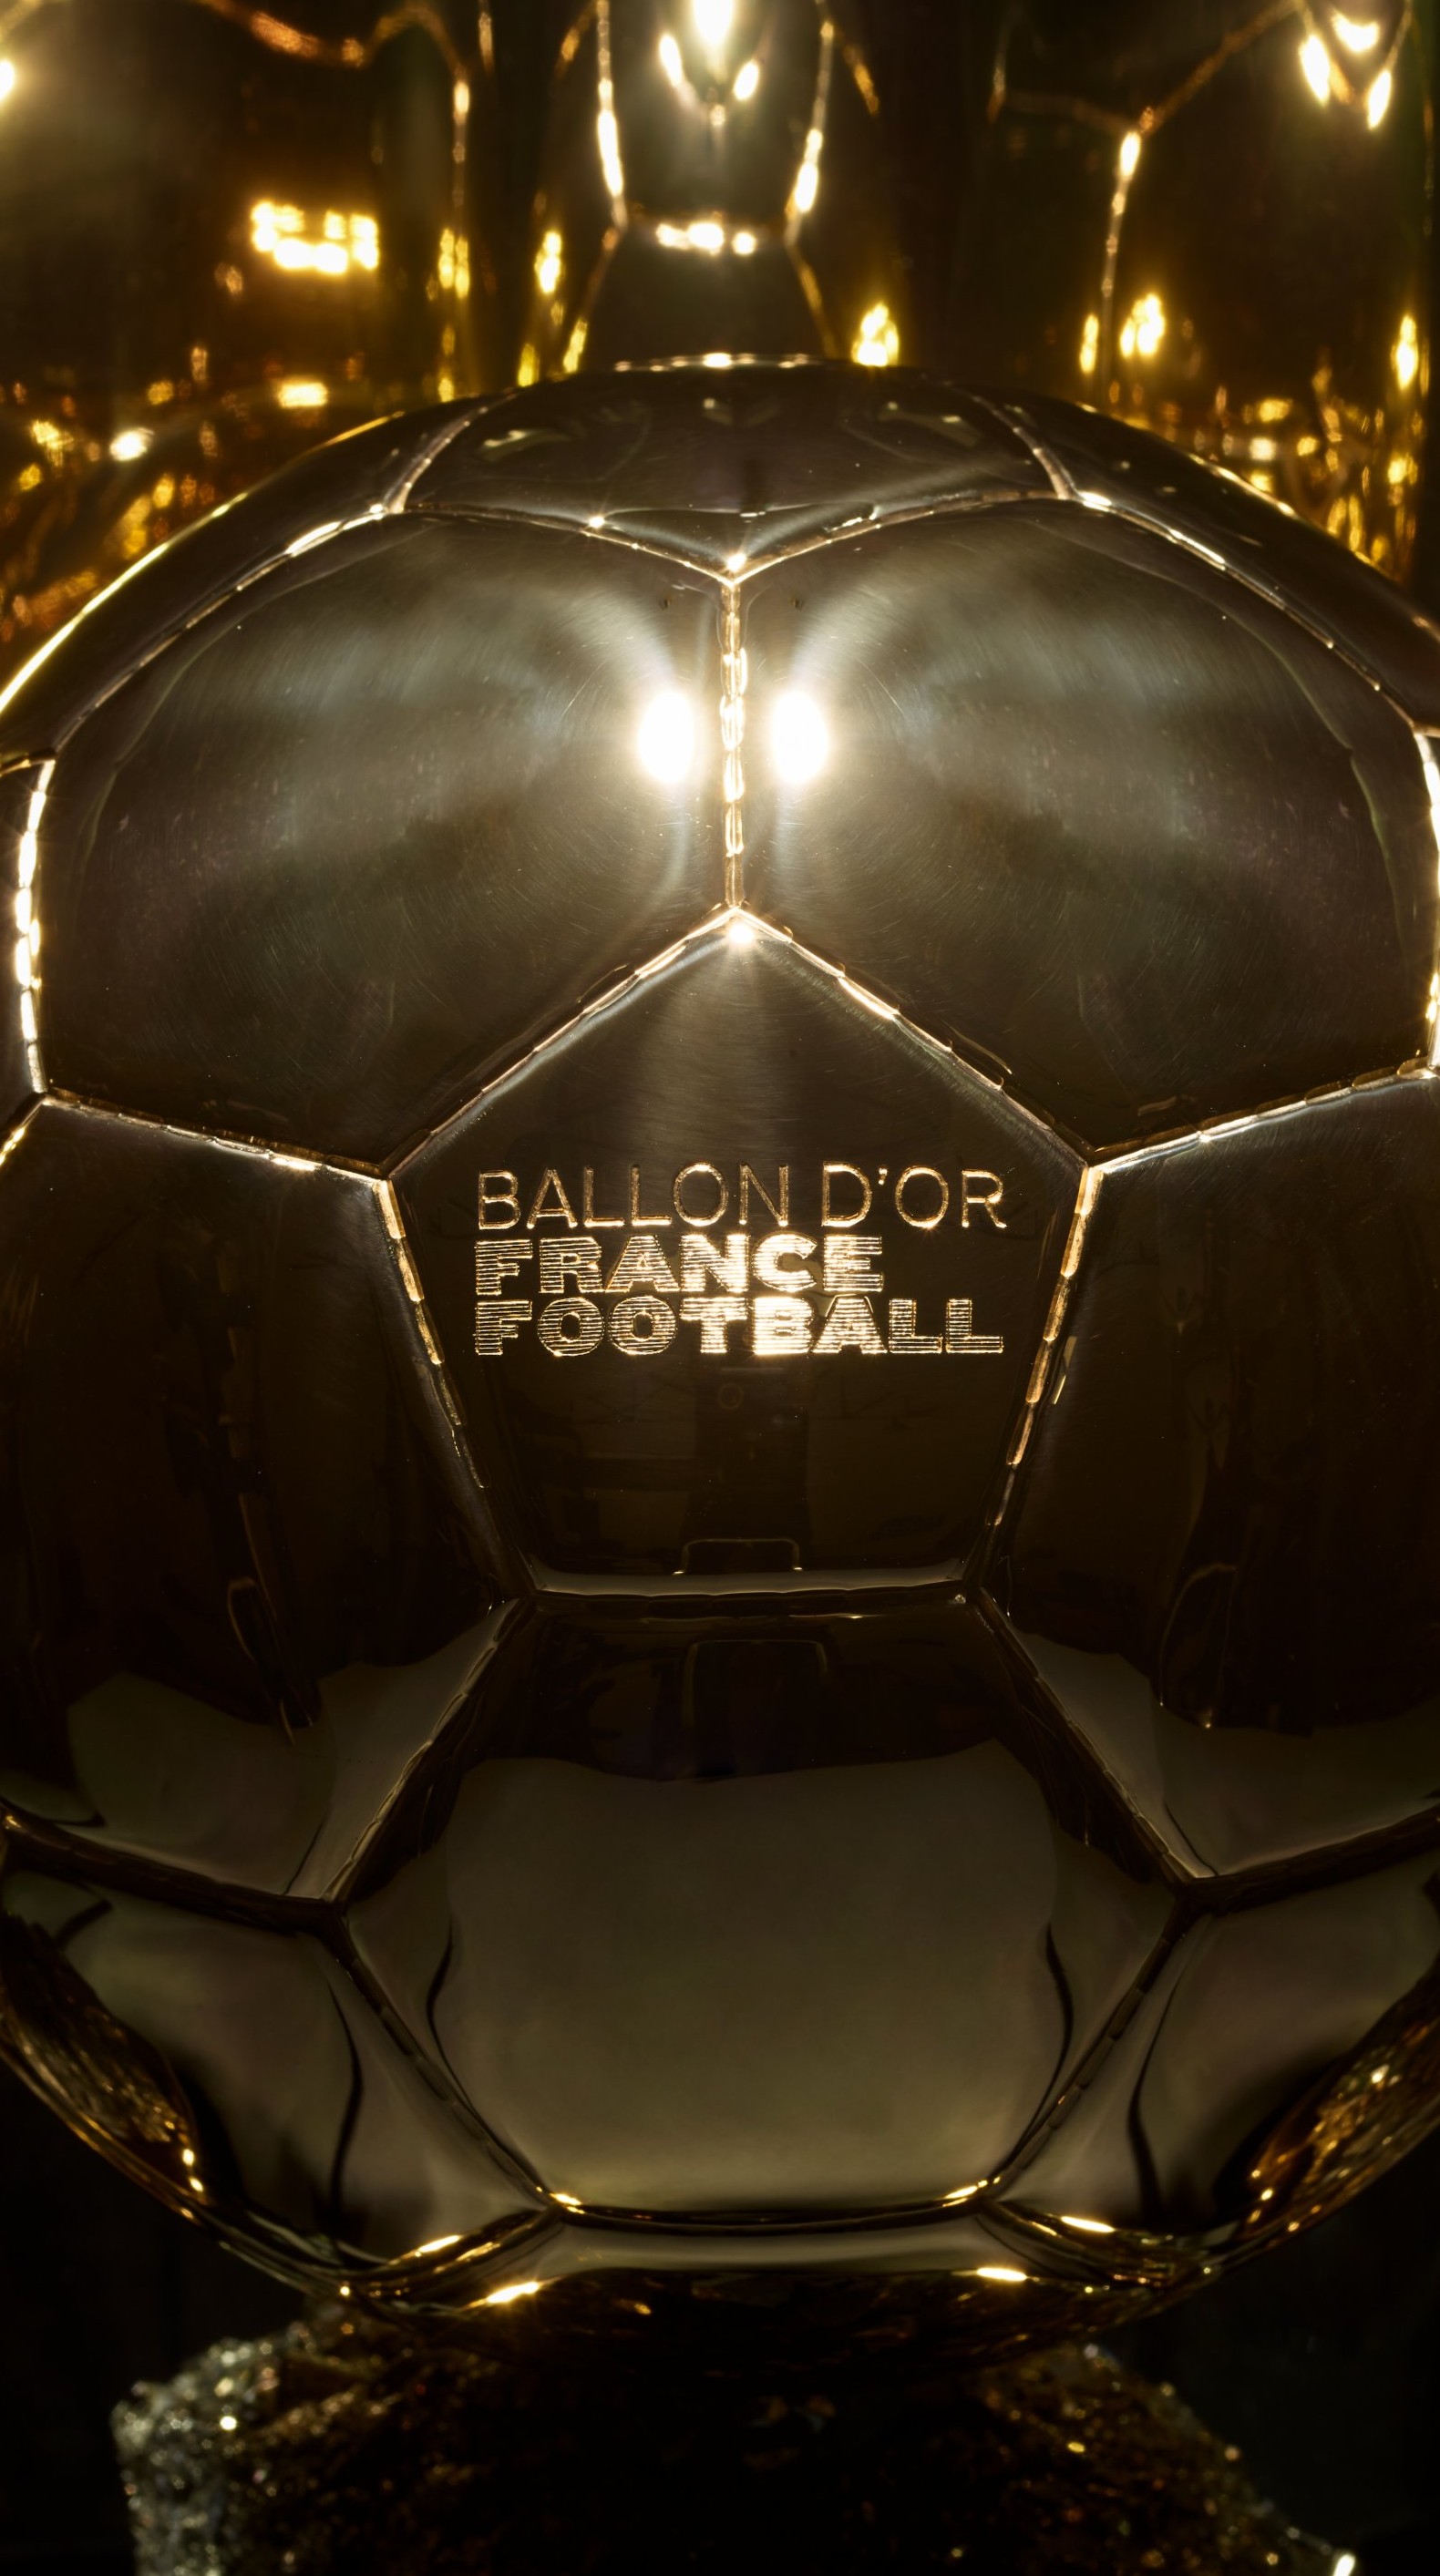 Bola de Ouro: Ederson disputará troféu Yashin de melhor goleiro do mundo, futebol internacional